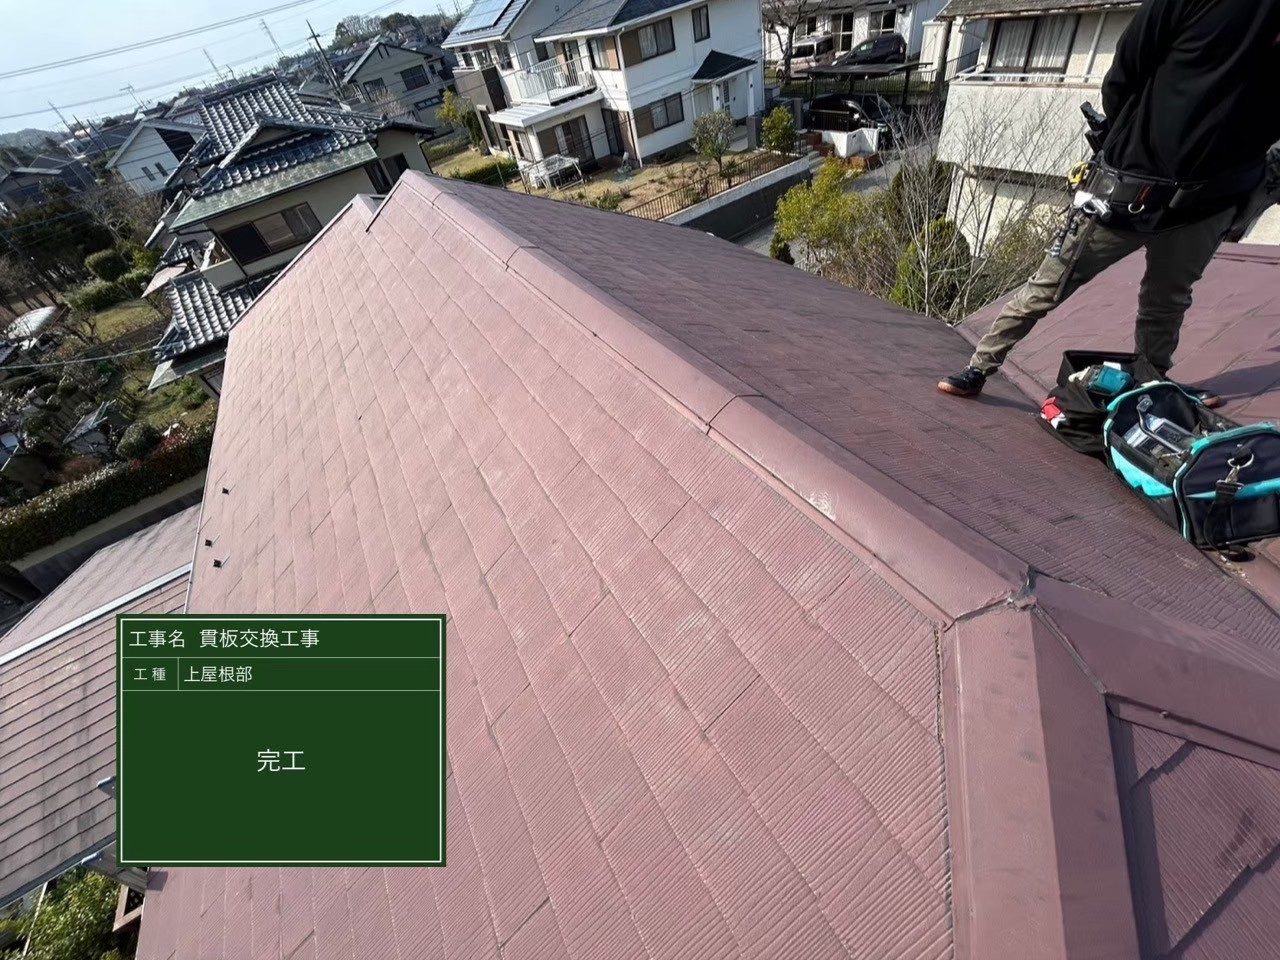 印旛郡にて屋根修理〈貫板の交換工事〉の施工後写真